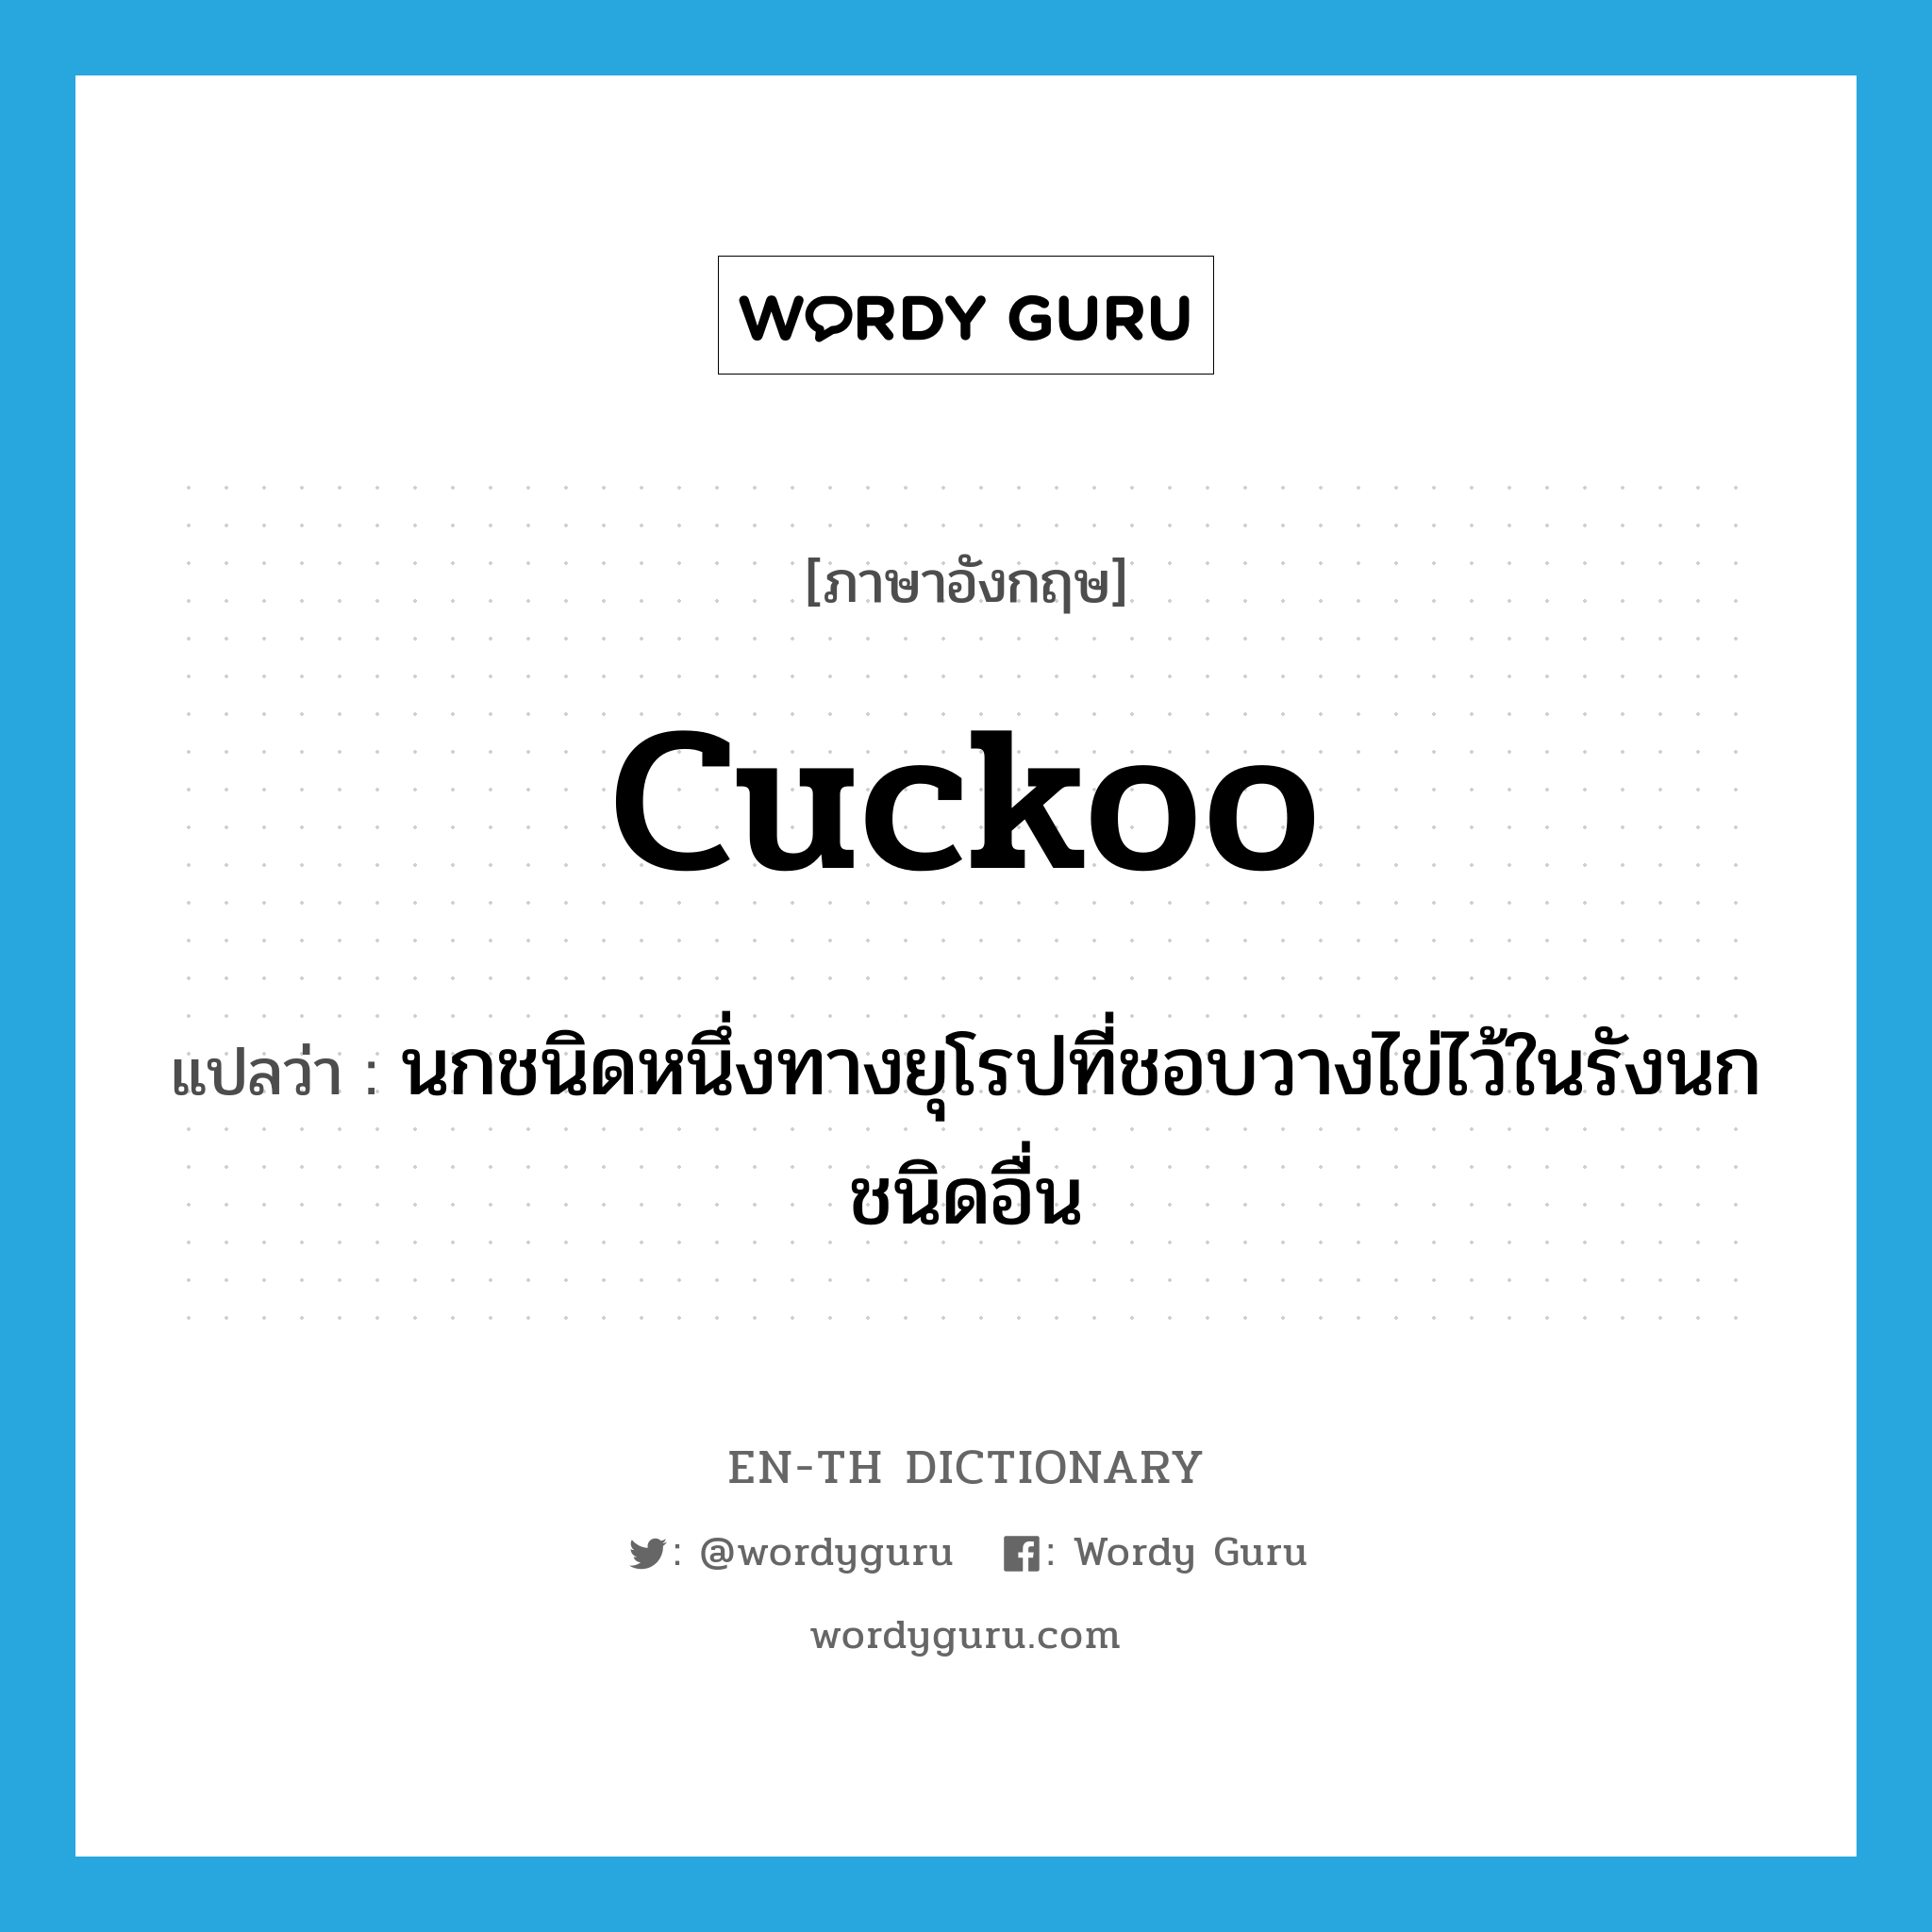 cuckoo แปลว่า?, คำศัพท์ภาษาอังกฤษ cuckoo แปลว่า นกชนิดหนึ่งทางยุโรปที่ชอบวางไข่ไว้ในรังนกชนิดอื่น ประเภท N หมวด N